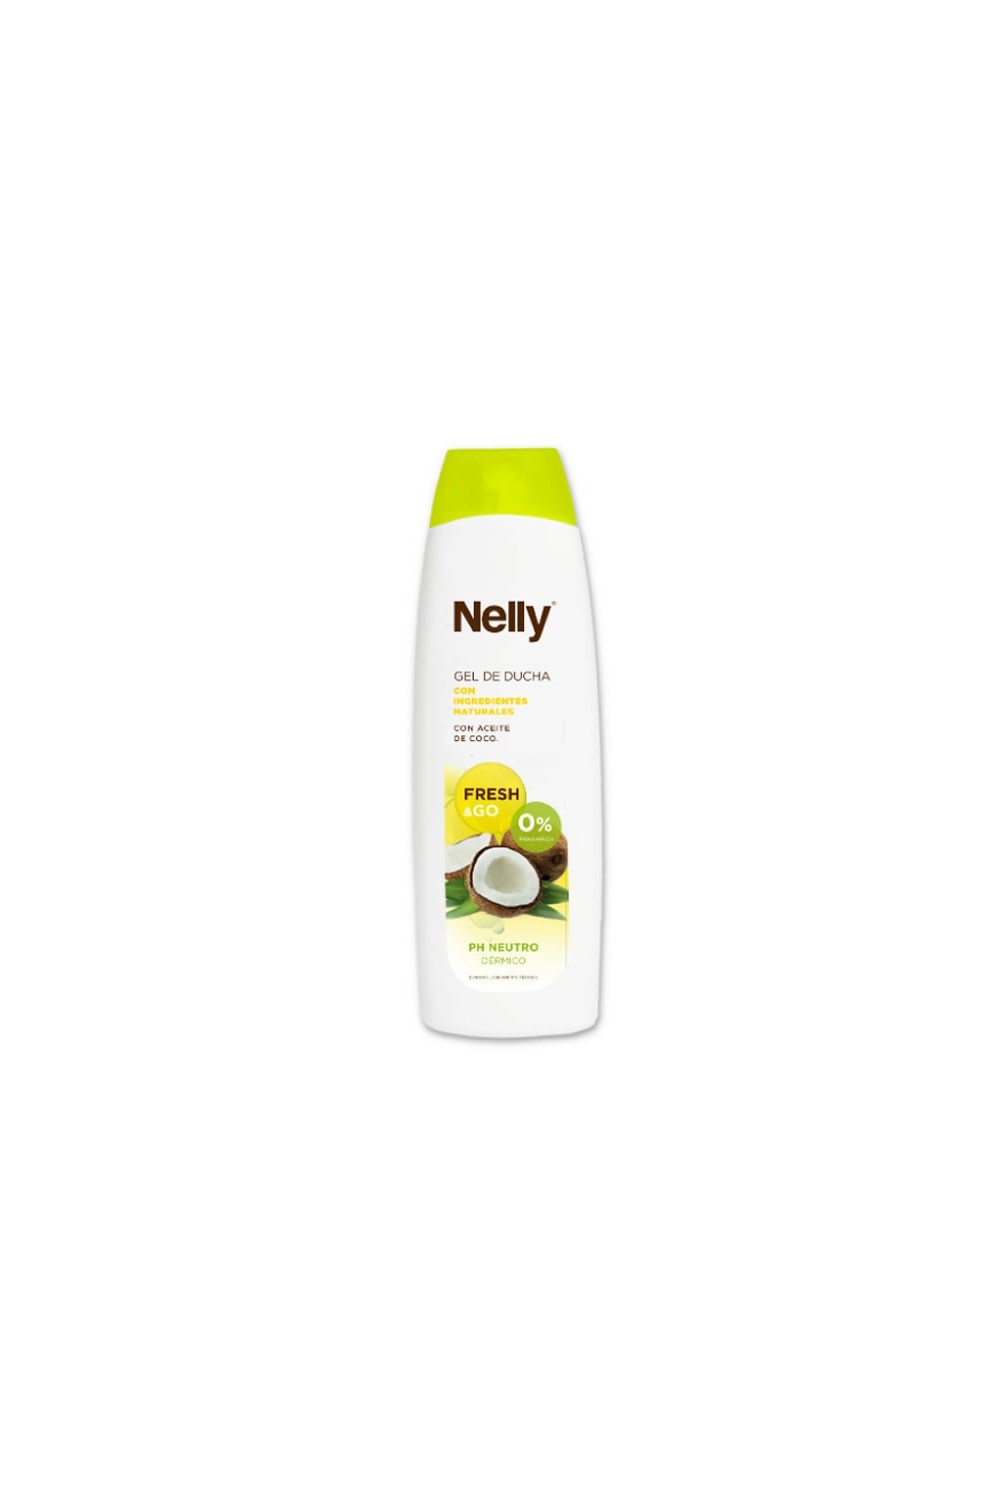 Nelly Bath Gel Fresh & Go Coconut 600ml